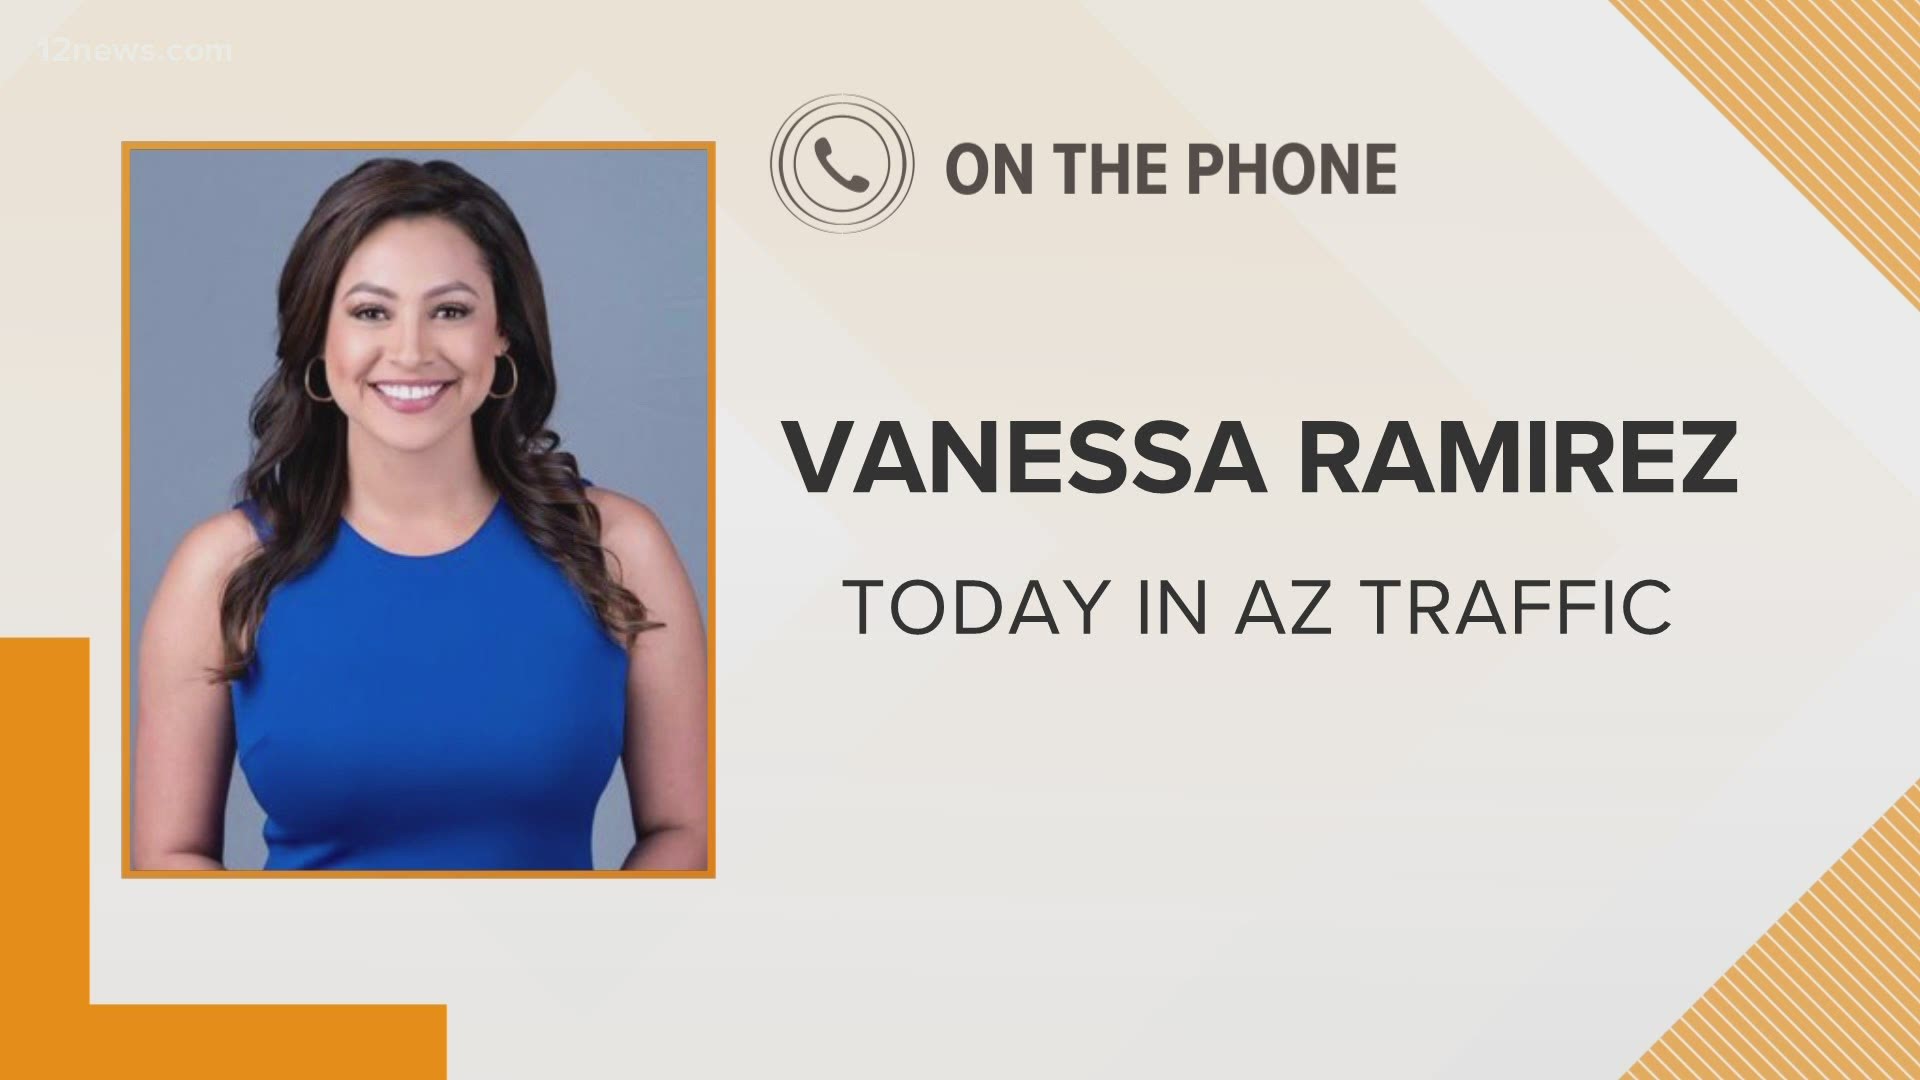 Team 12's Vanessa Ramirez has your weekend traffic report on Oct. 2.